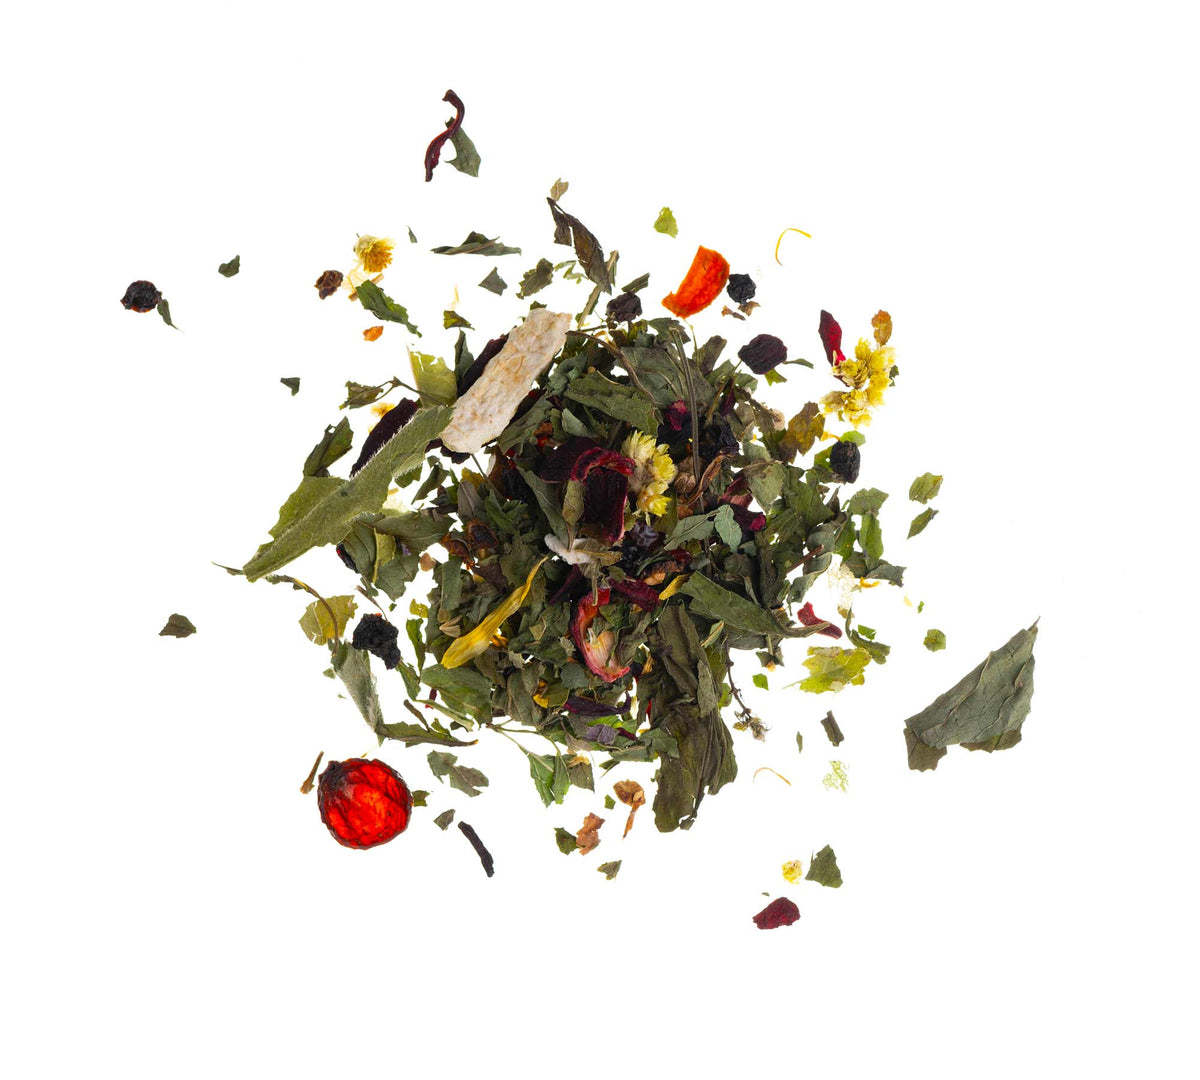 Alpine herbs tea